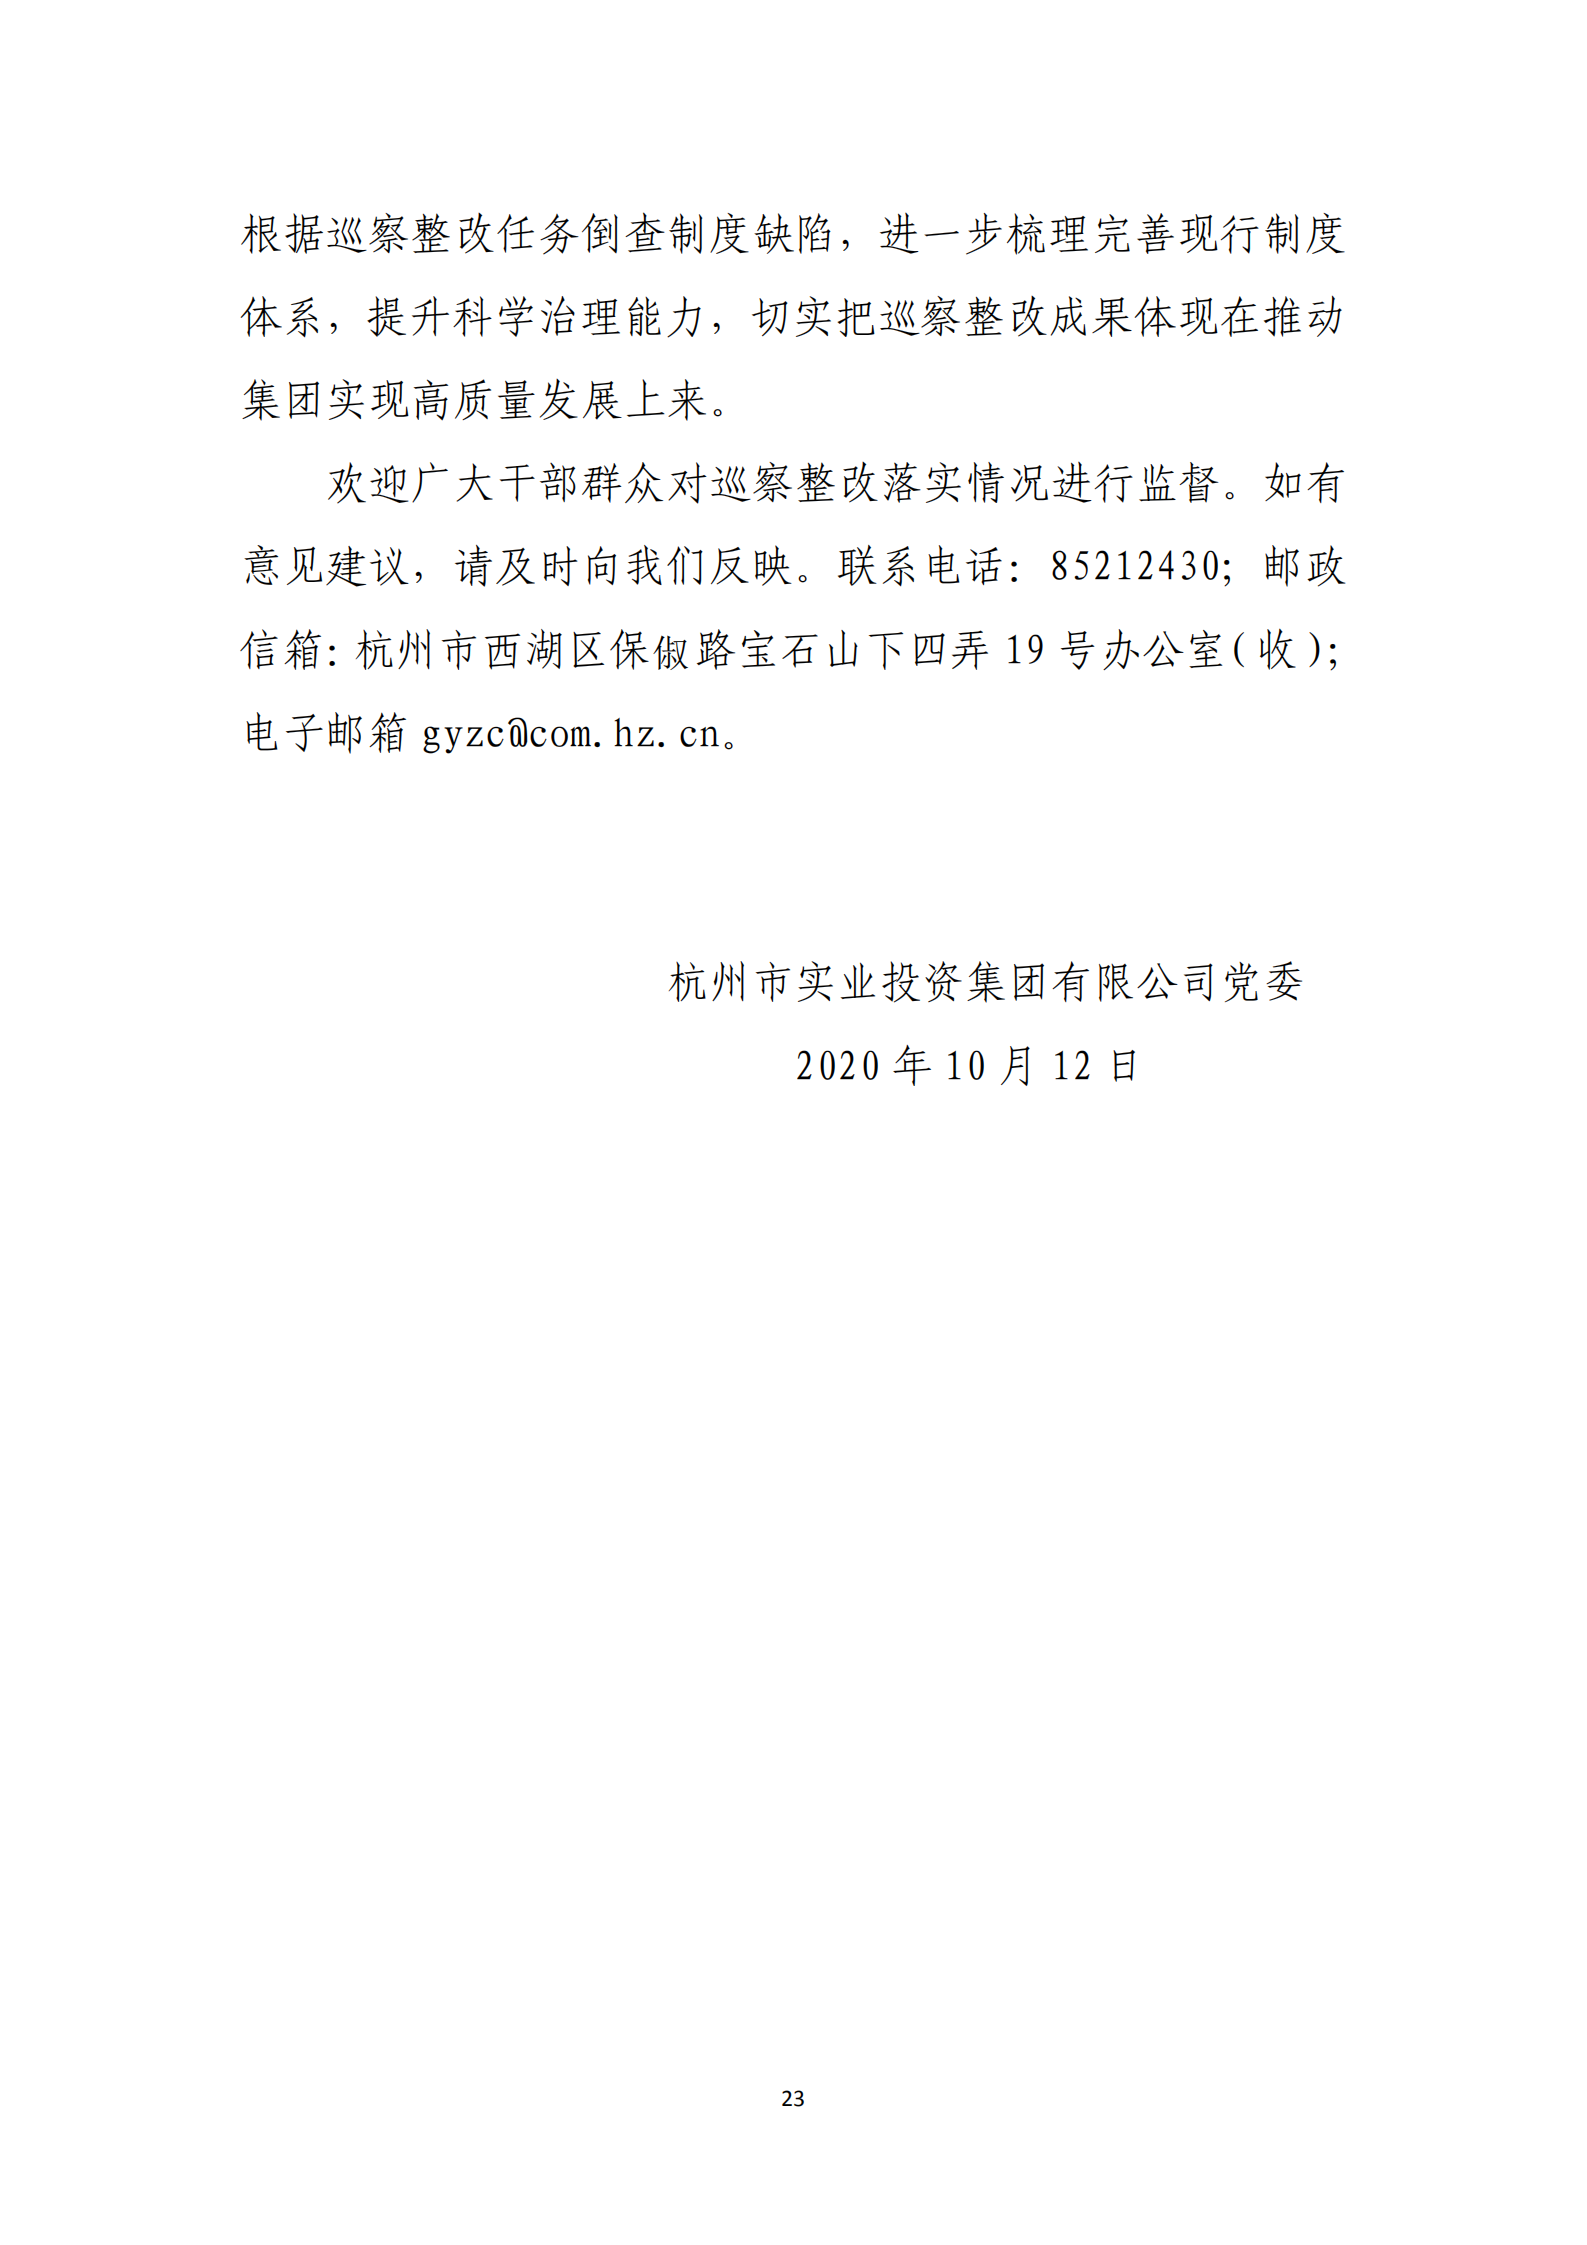 博乐体育网页【中国】有限公司党委关于巡察整改情况的通报_22.png